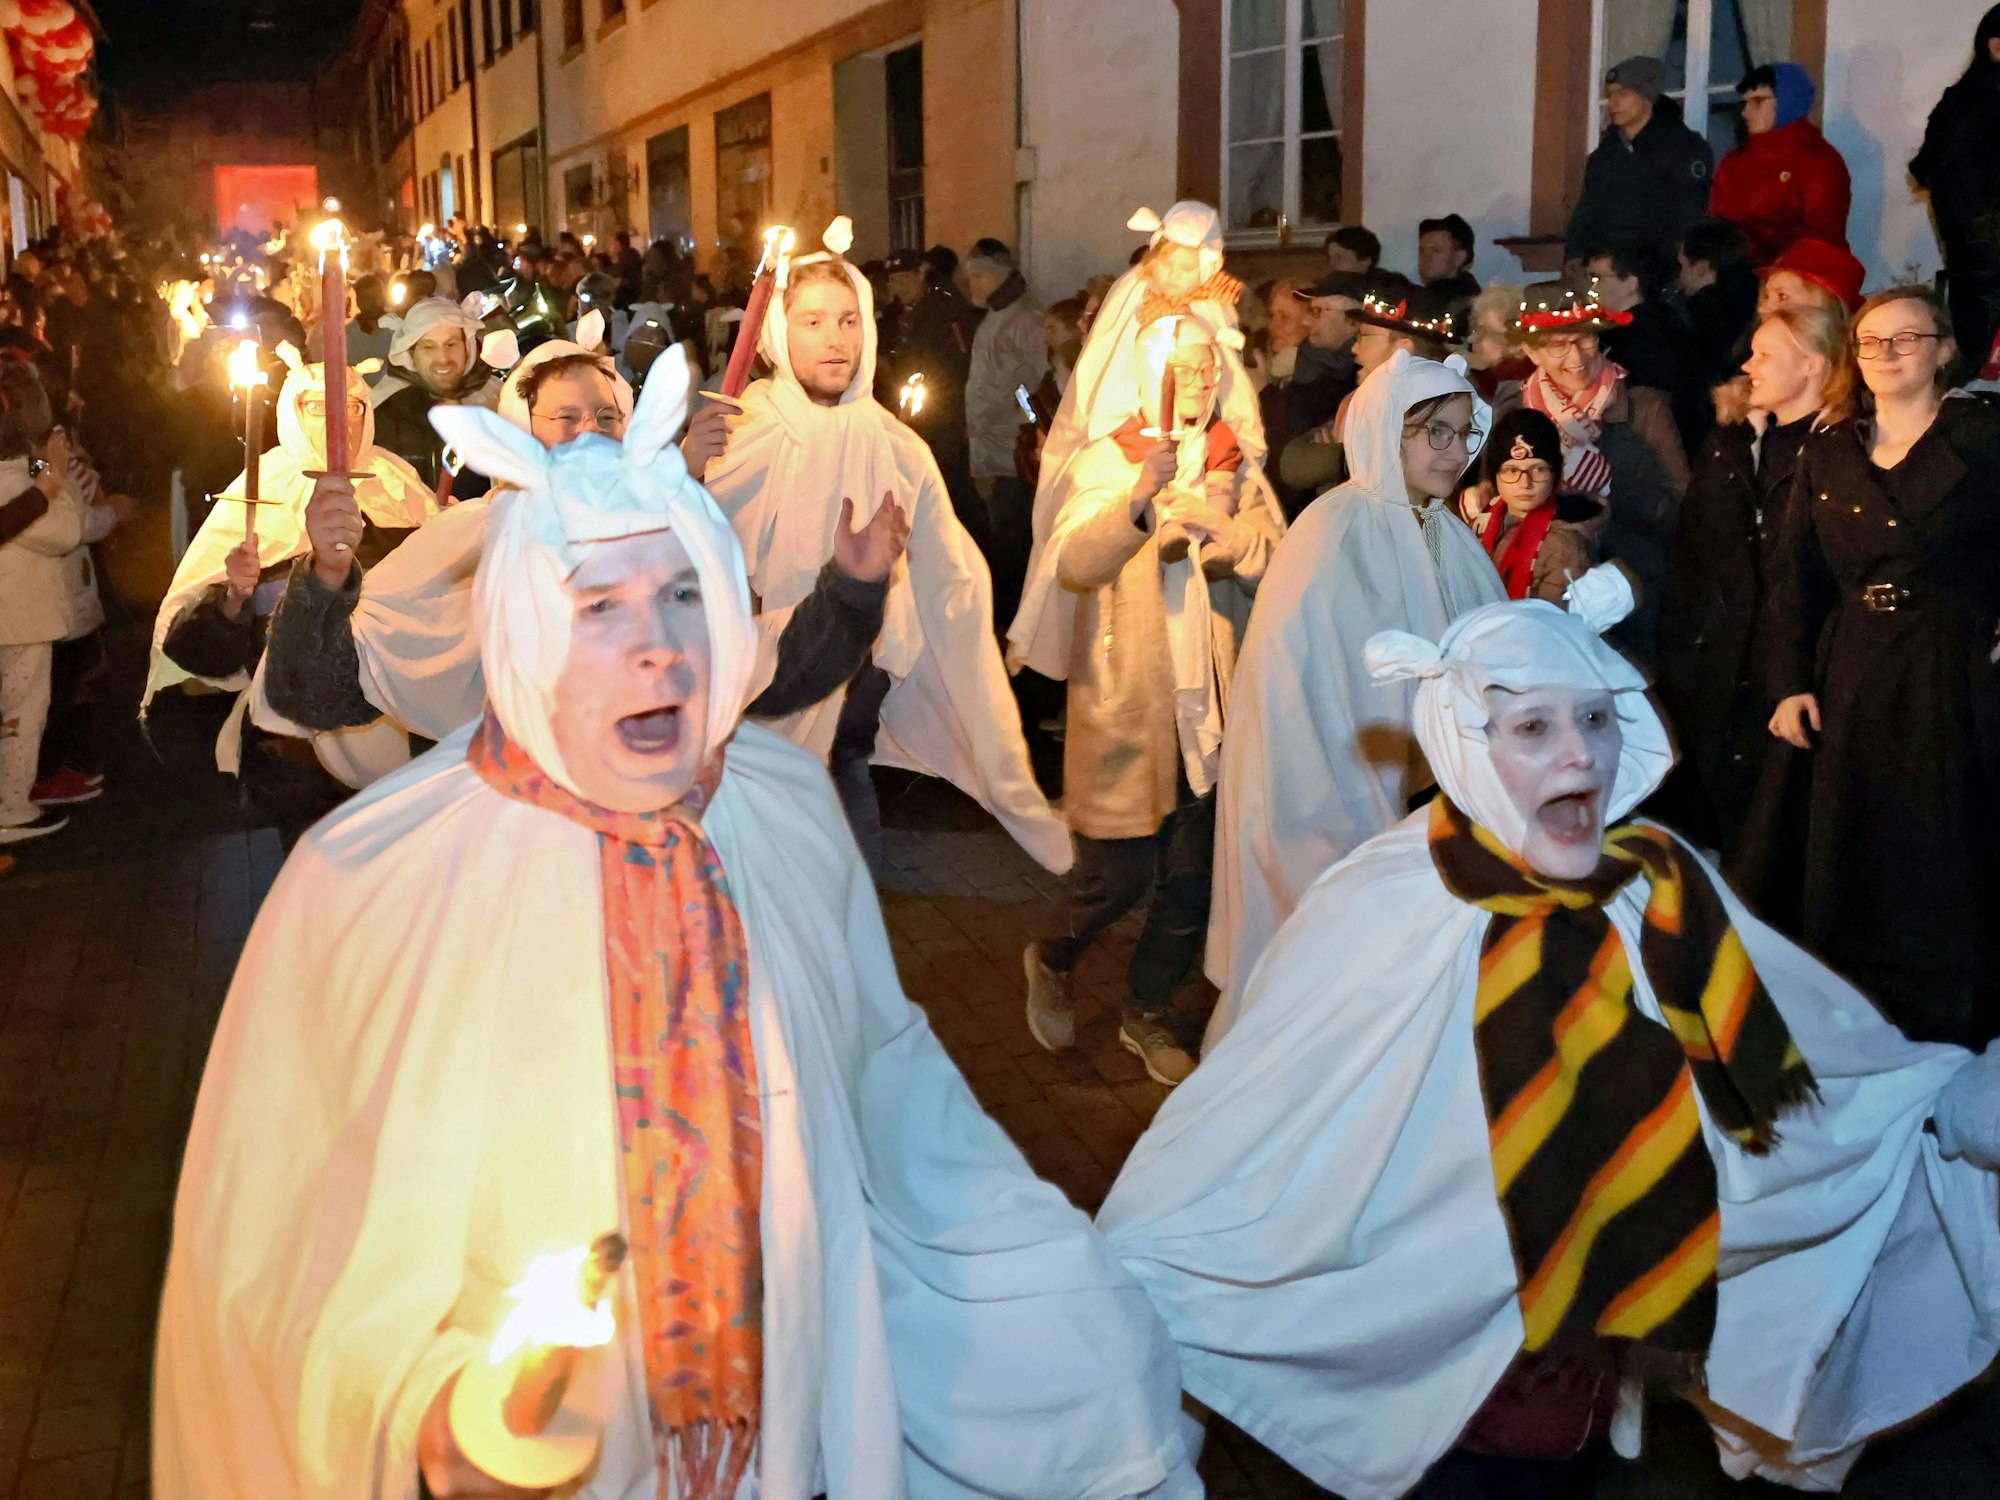 Der Zug der Geister zieht kreischend durch die Straßen von Blankenheim.Die Teilnehmer sind mit weißen Bettlaken verkleidet, viele tragen Pechfackeln.